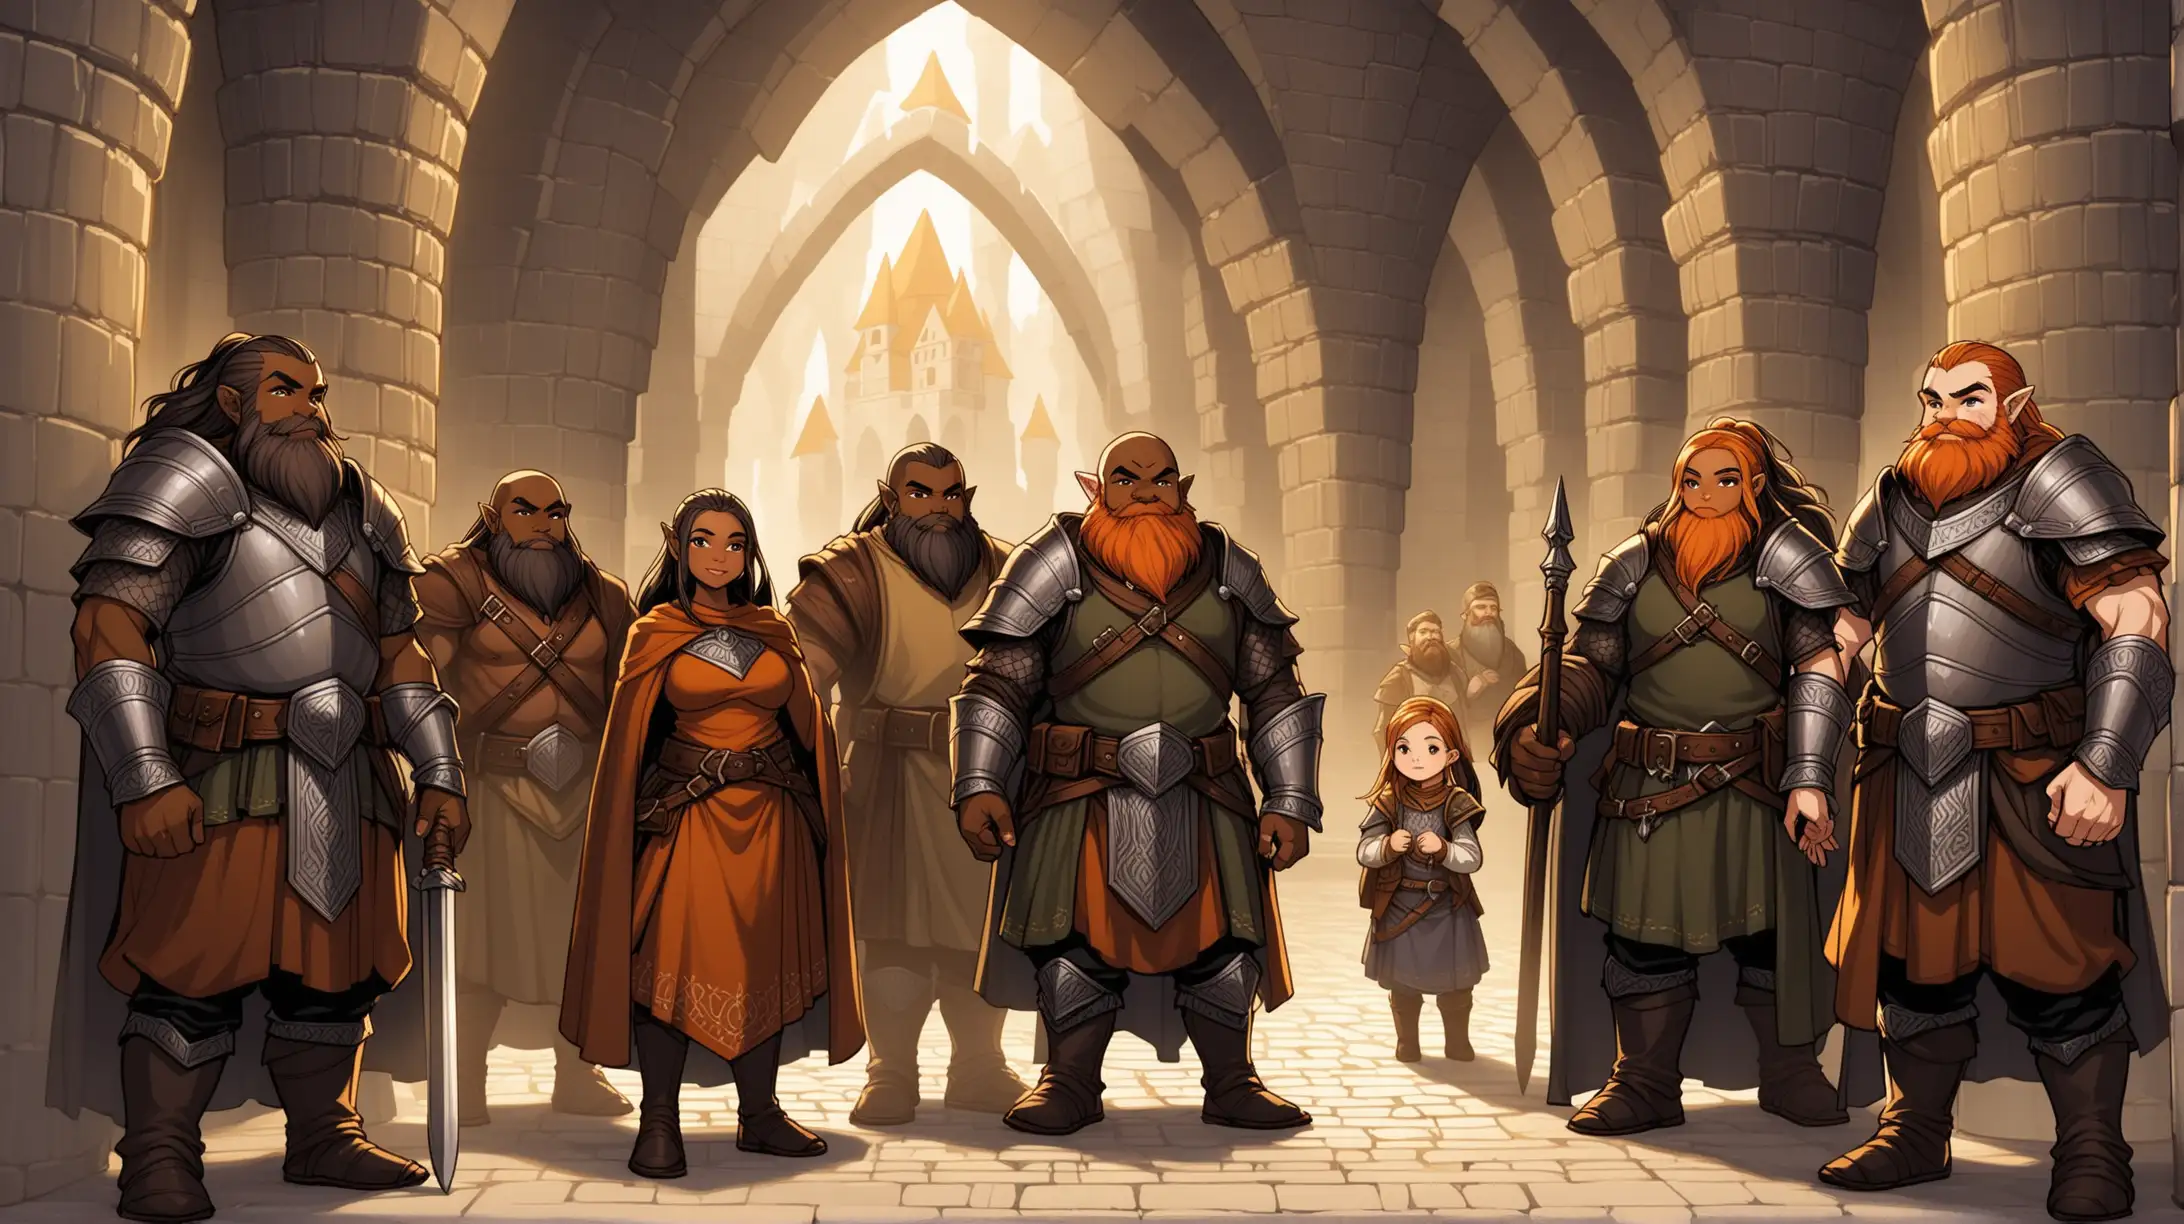 Medieval Fantasy DarkSkinned Dwarven Citizens in Underground Palace